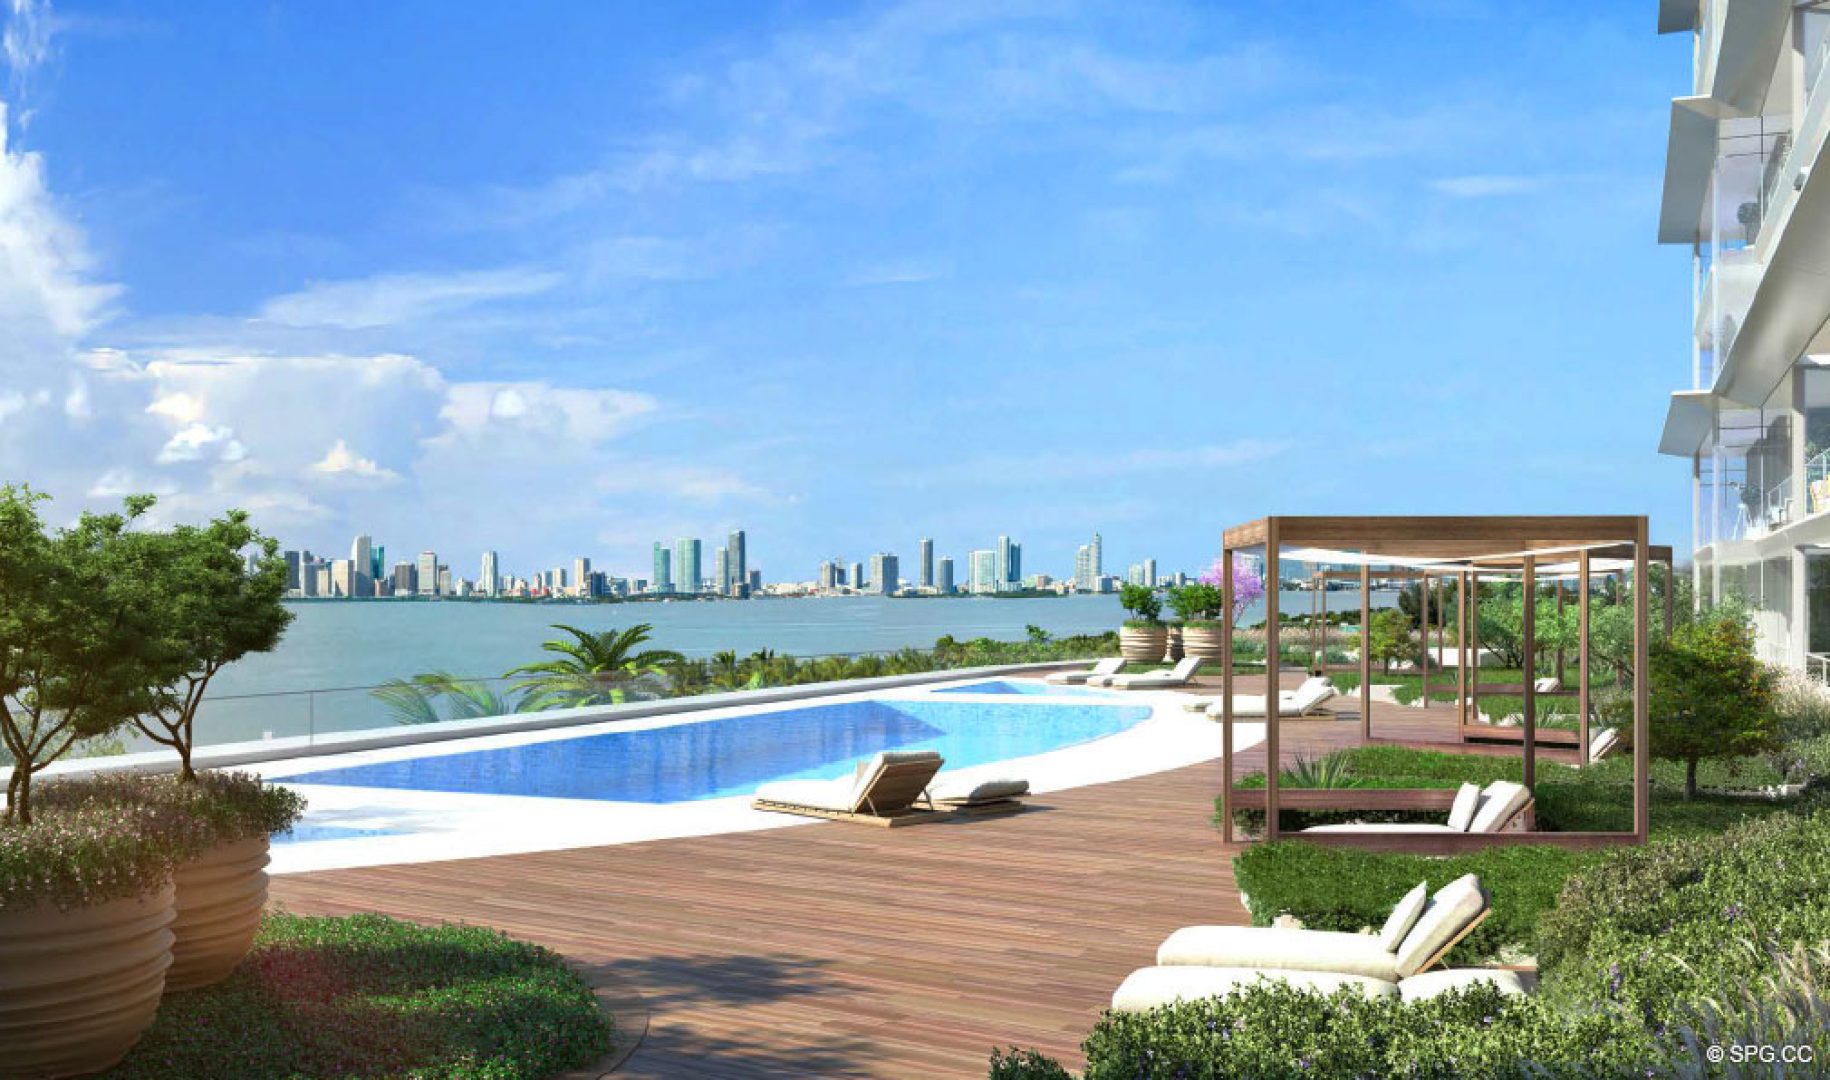 Waterfront Pool Area at 3900 Alton, Luxury Waterfront Condos in Miami Beach, Florida 33140